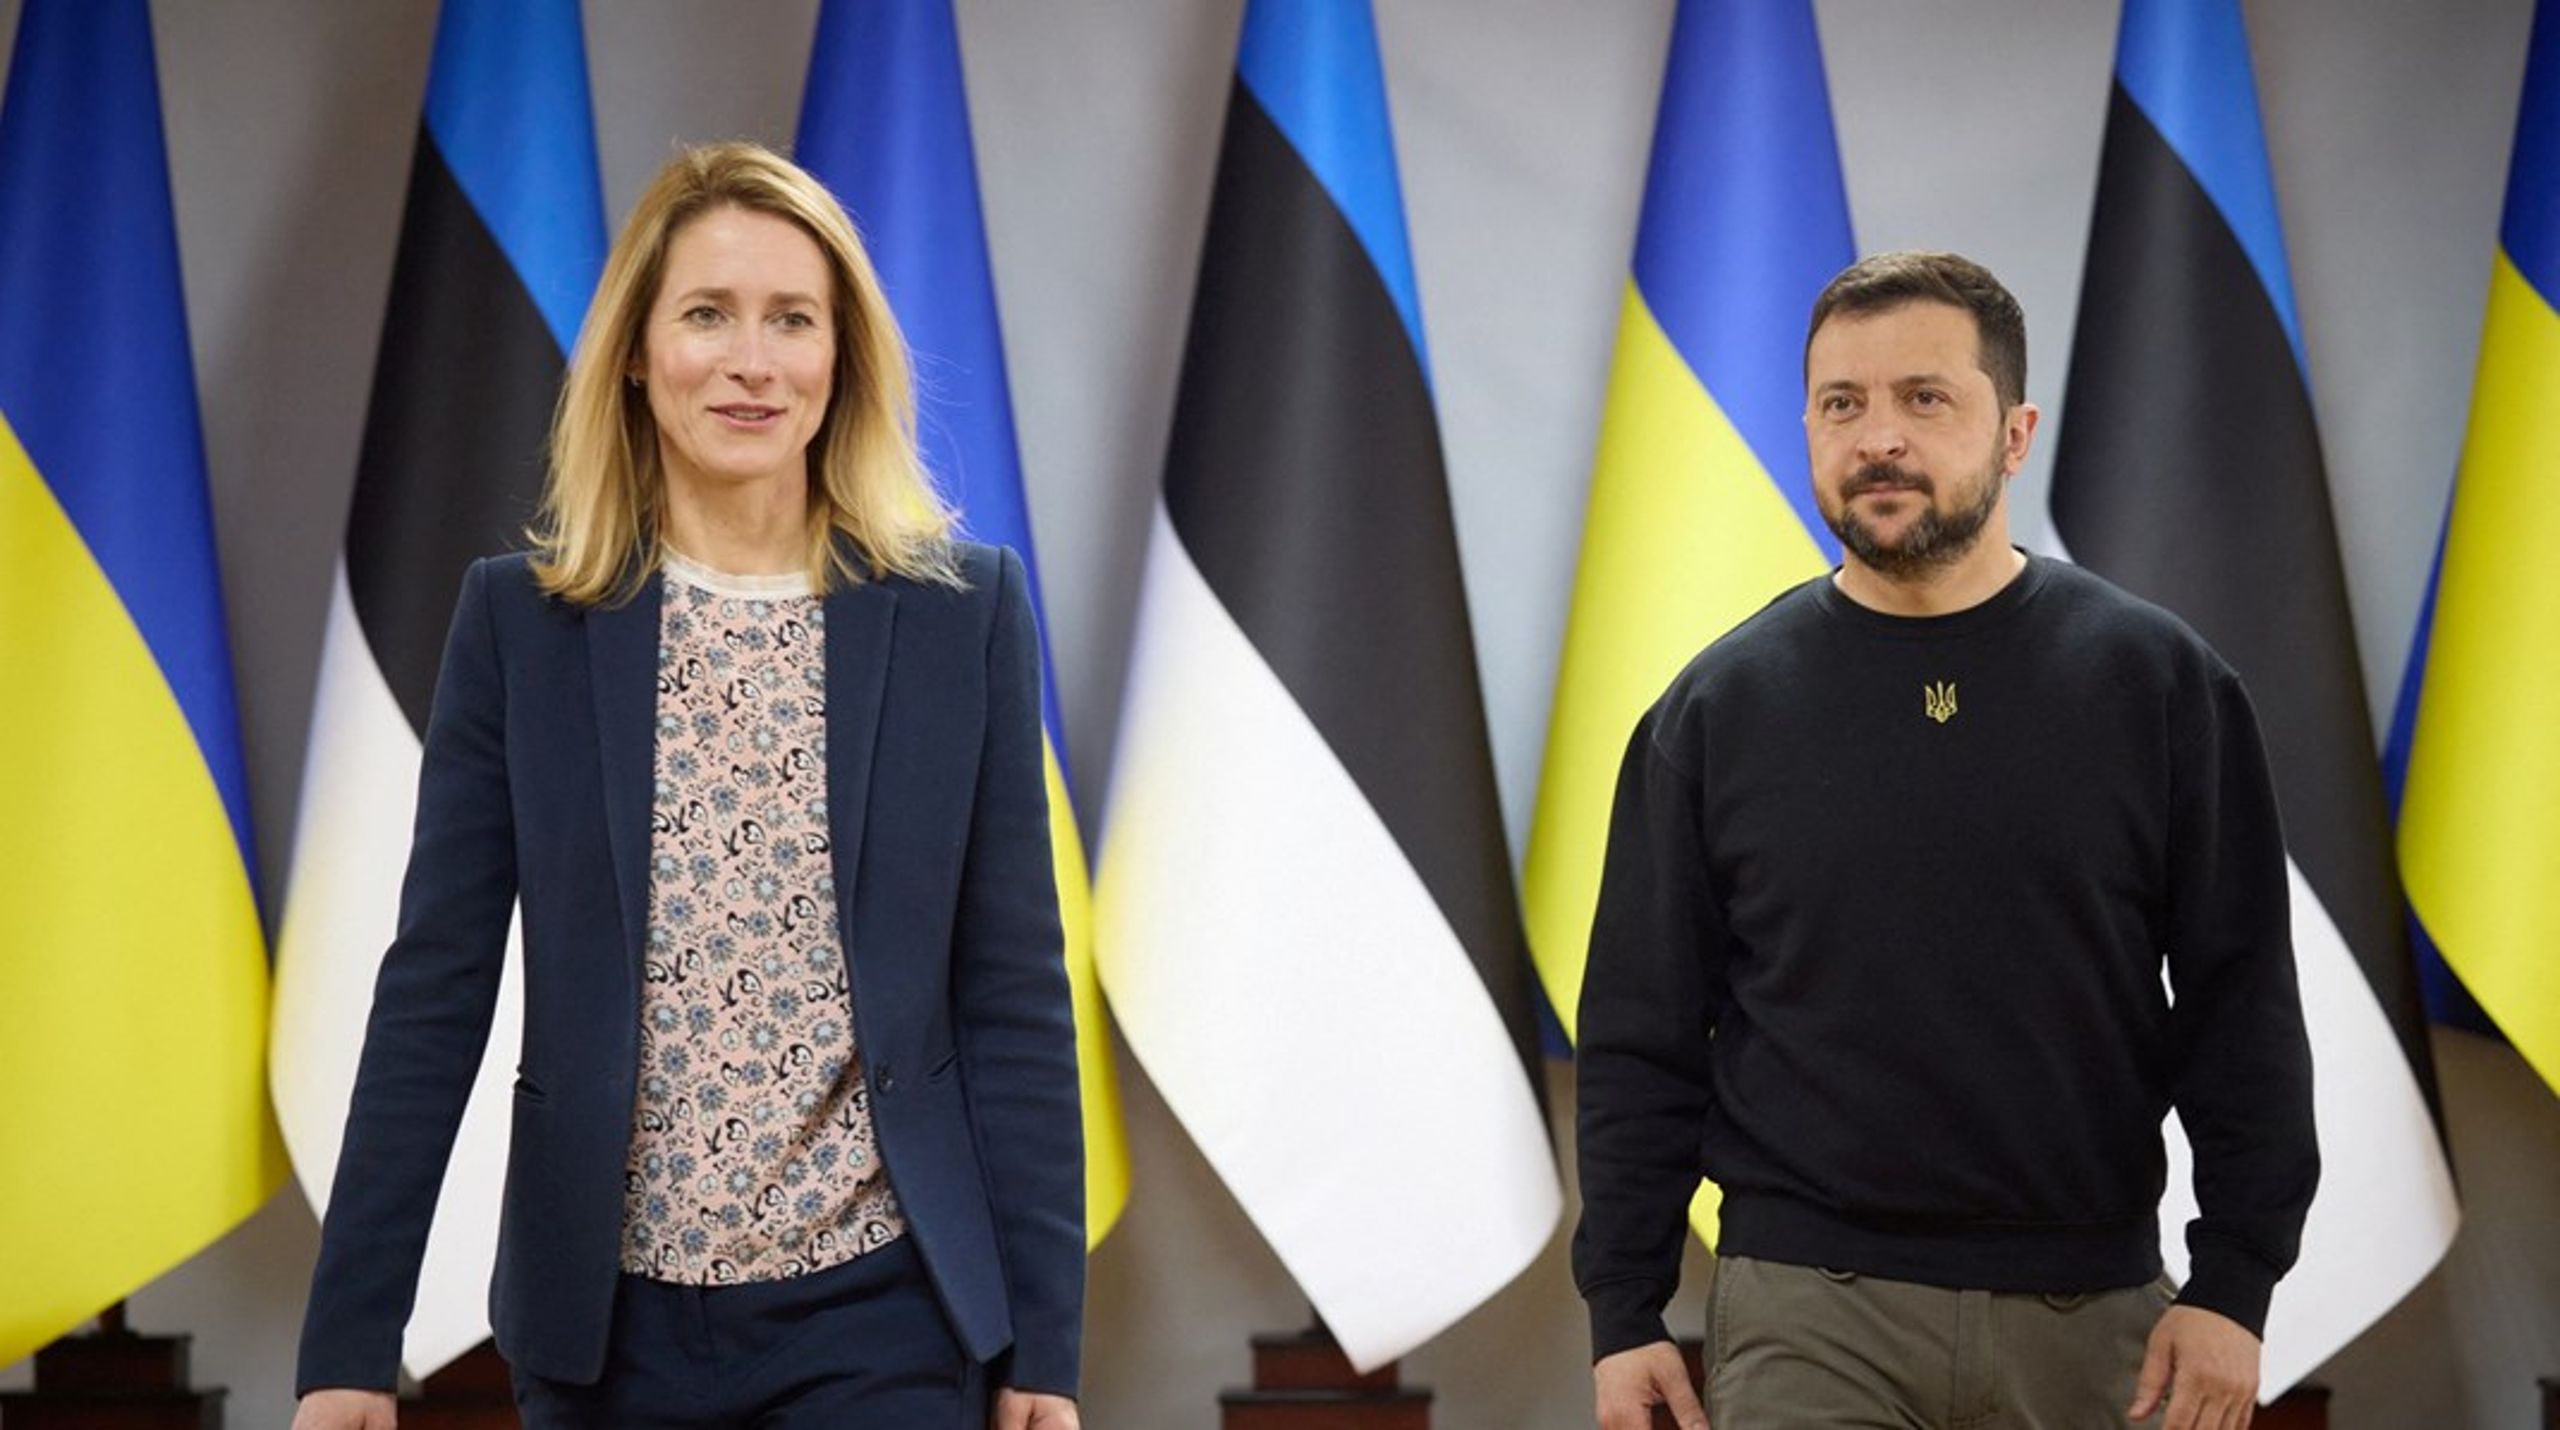 Den estiske statsministeren Kaja Kallas har markert seg som en sterk støttespiller til Ukraina og president Volodymyr Zelenskyj.&nbsp;– Europas langsiktige sikkerhet krever at Ukraina blir medlem av Nato, sier hun til Altinget.